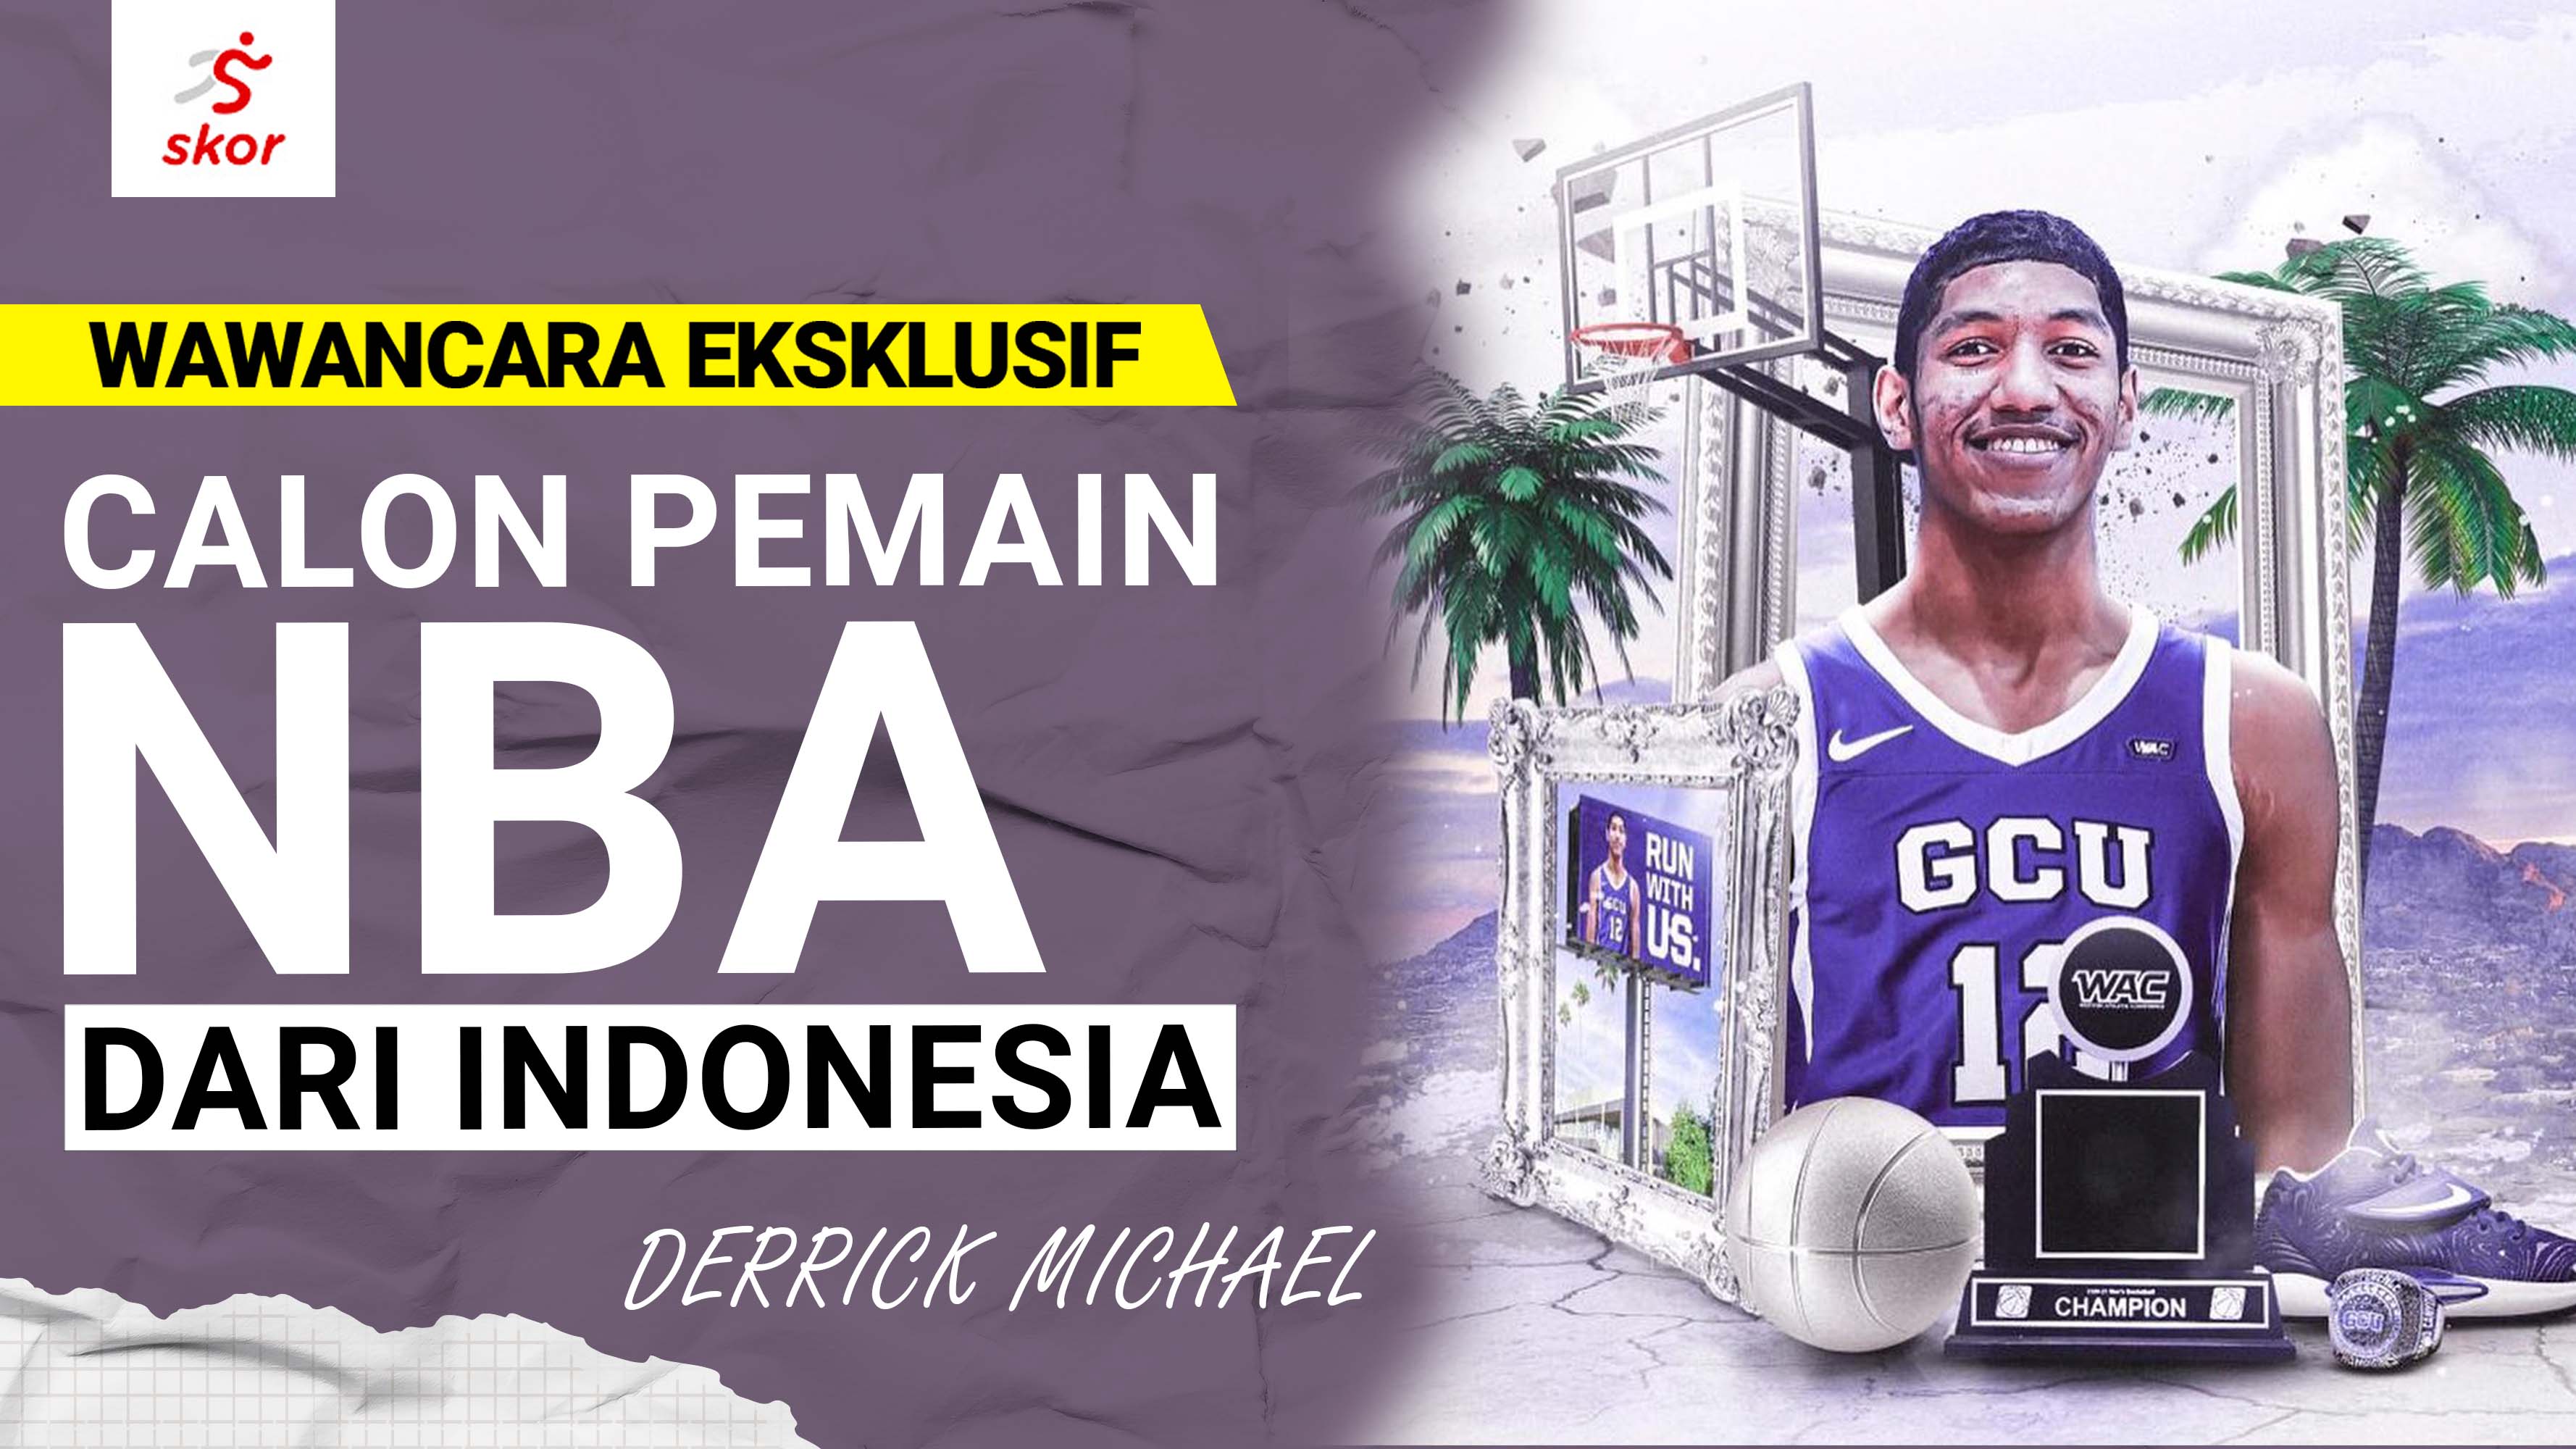 Wawancara Eksklusif Derrick Michael: Pebasket Indonesia Merajut Asa Tampil di NBA